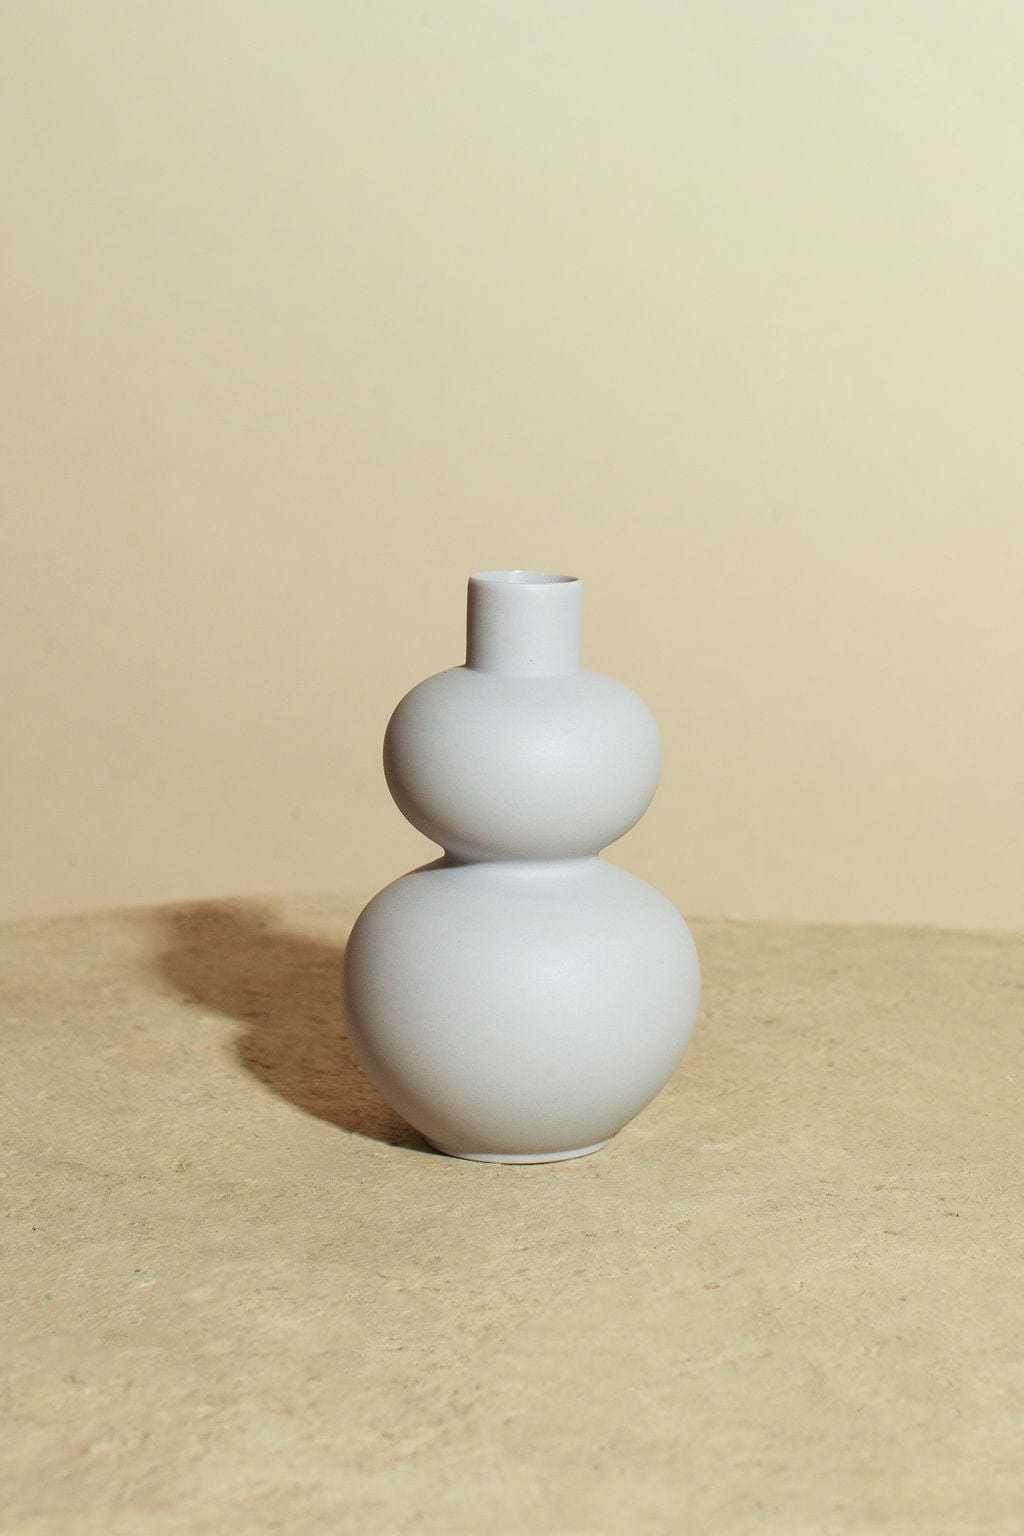 Idlewild Floral Co. Colorful Porcelain Bud Vase